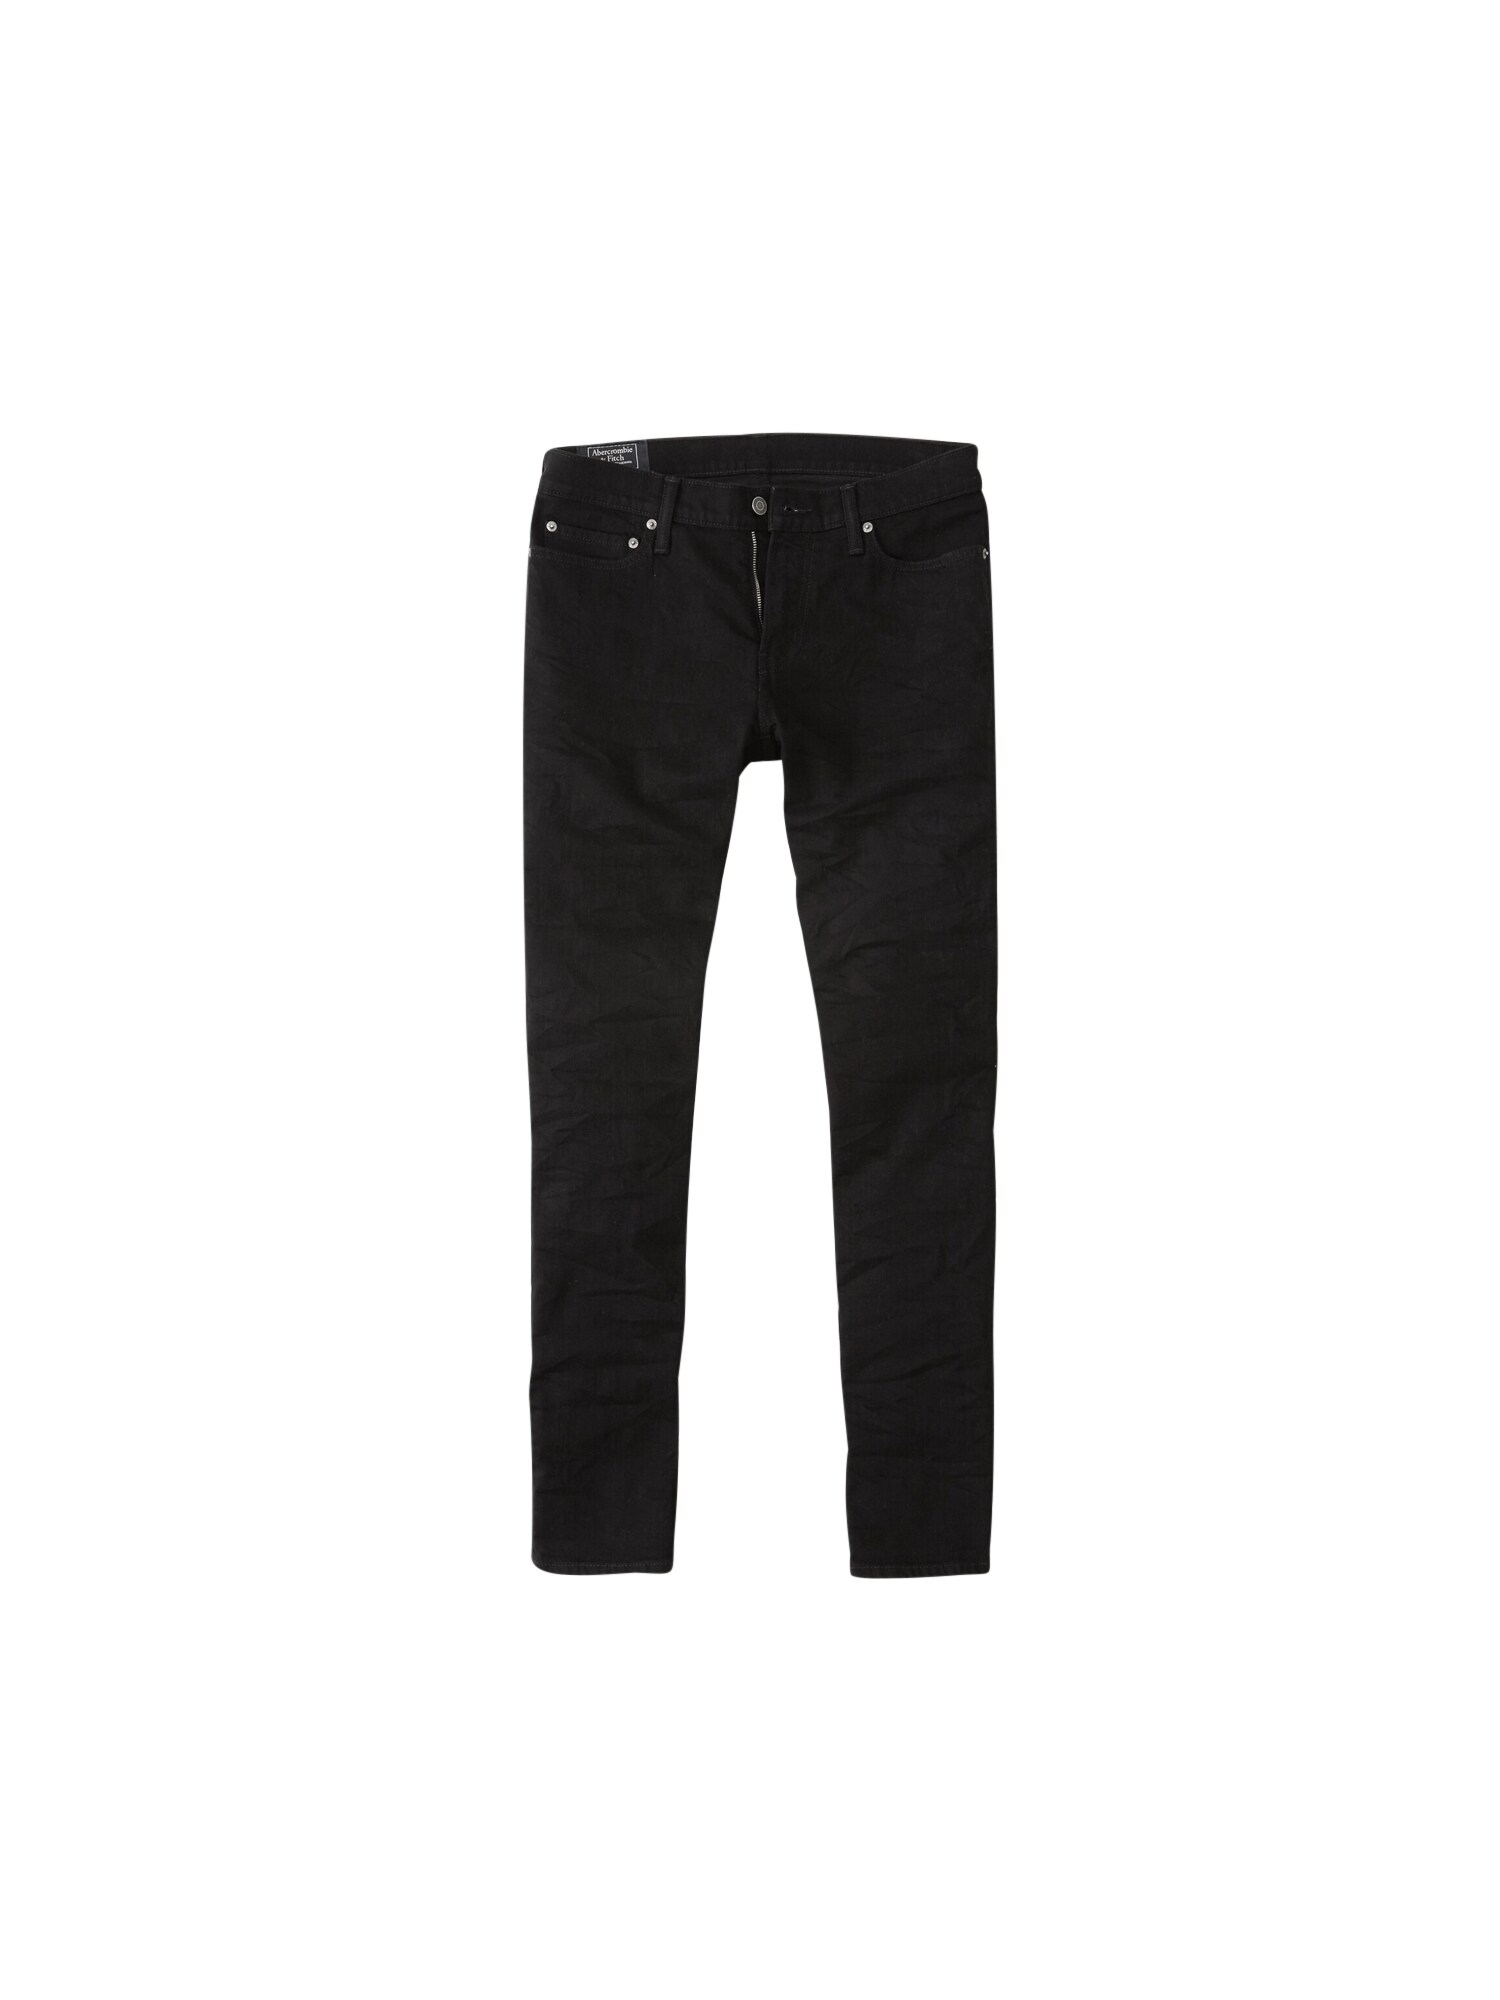 Abercrombie & Fitch Džinsai  juodo džinso spalva